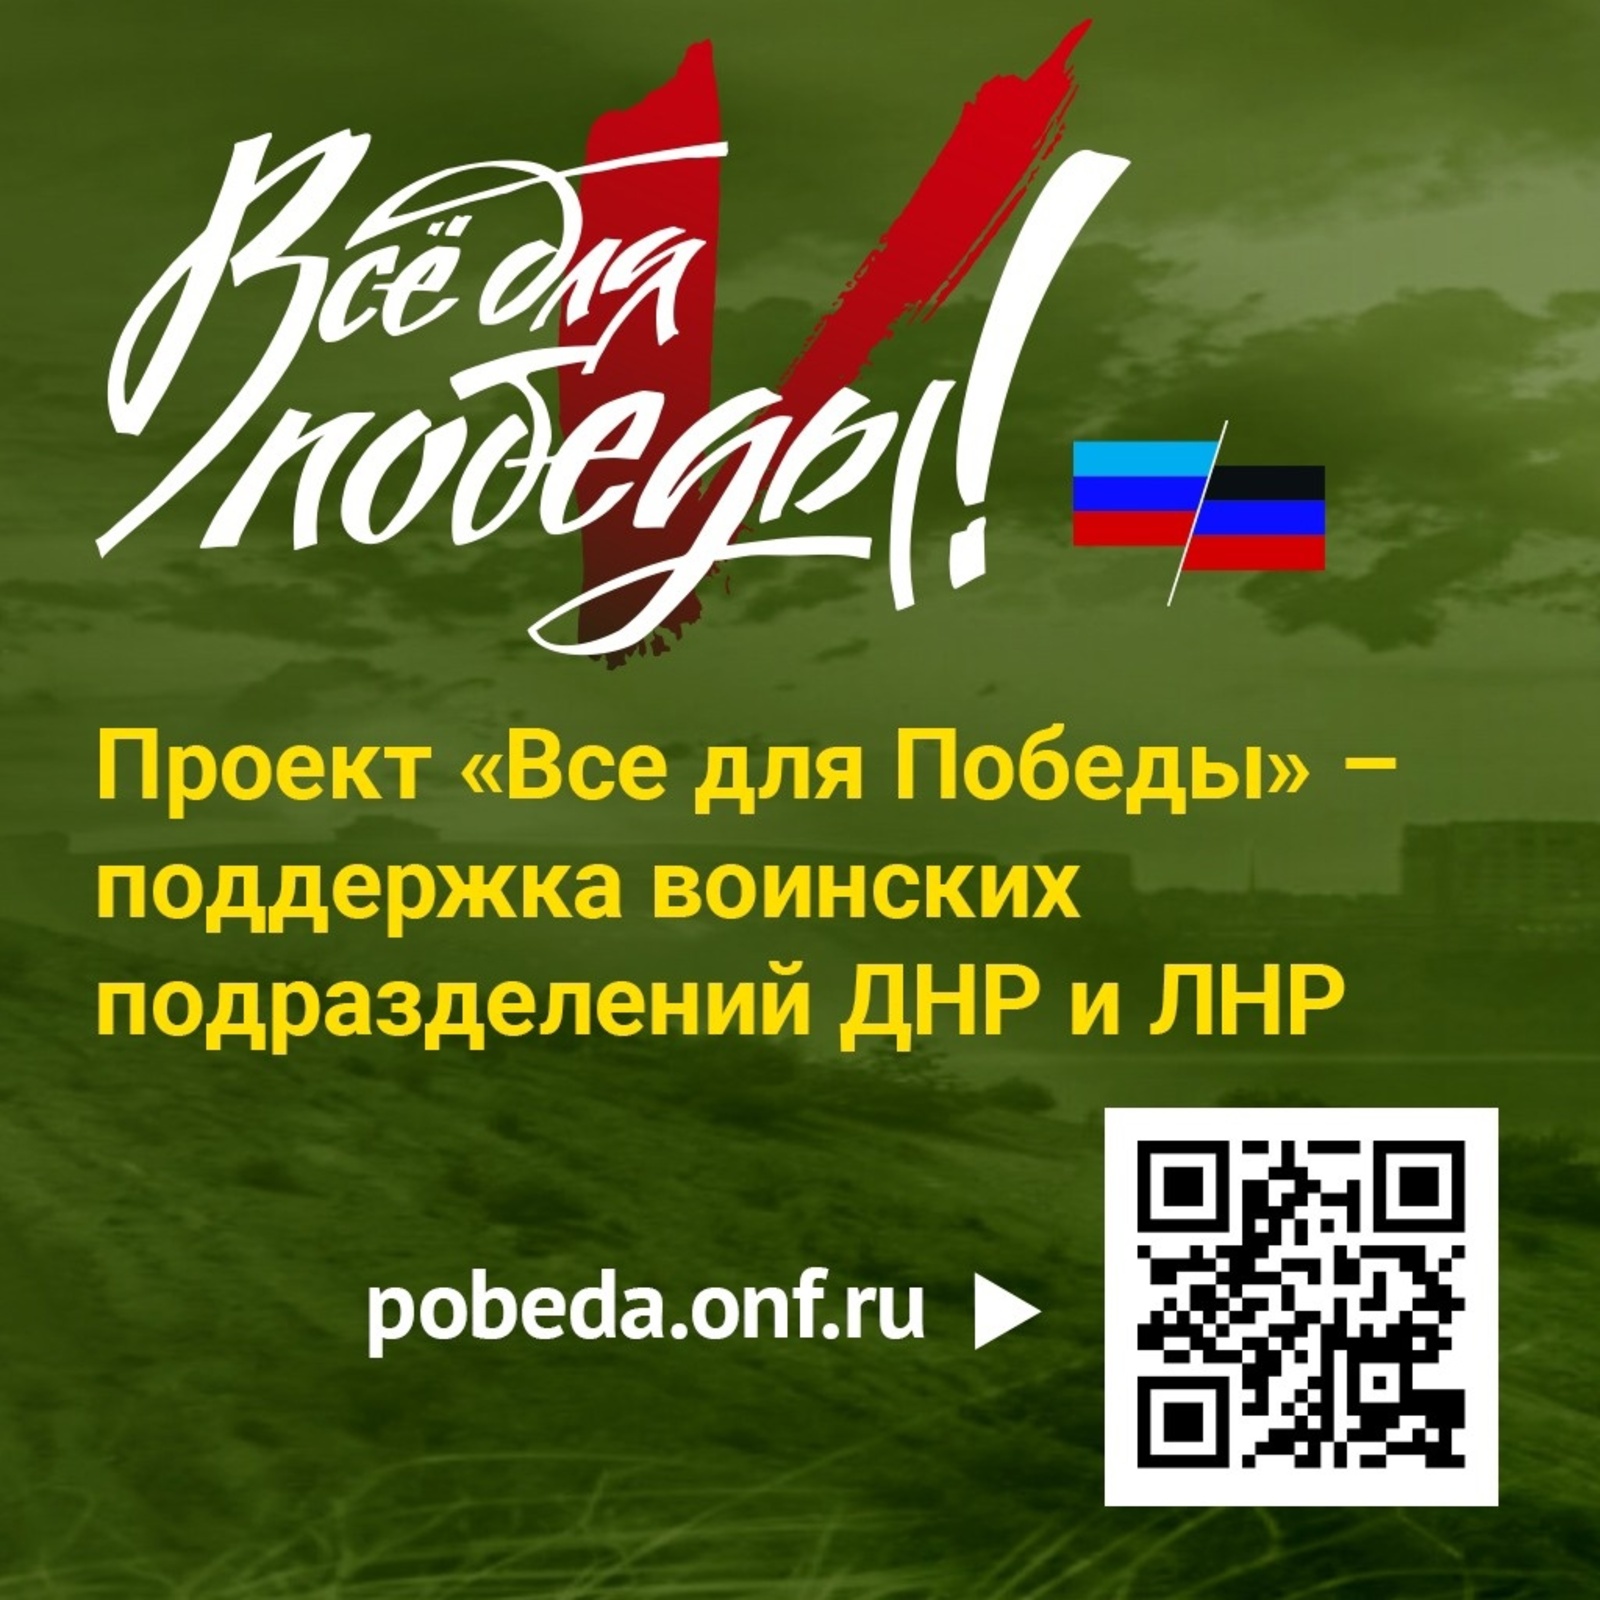 В Башкортостане начали сбор средств для воинских подразделений ДНР и ЛНР